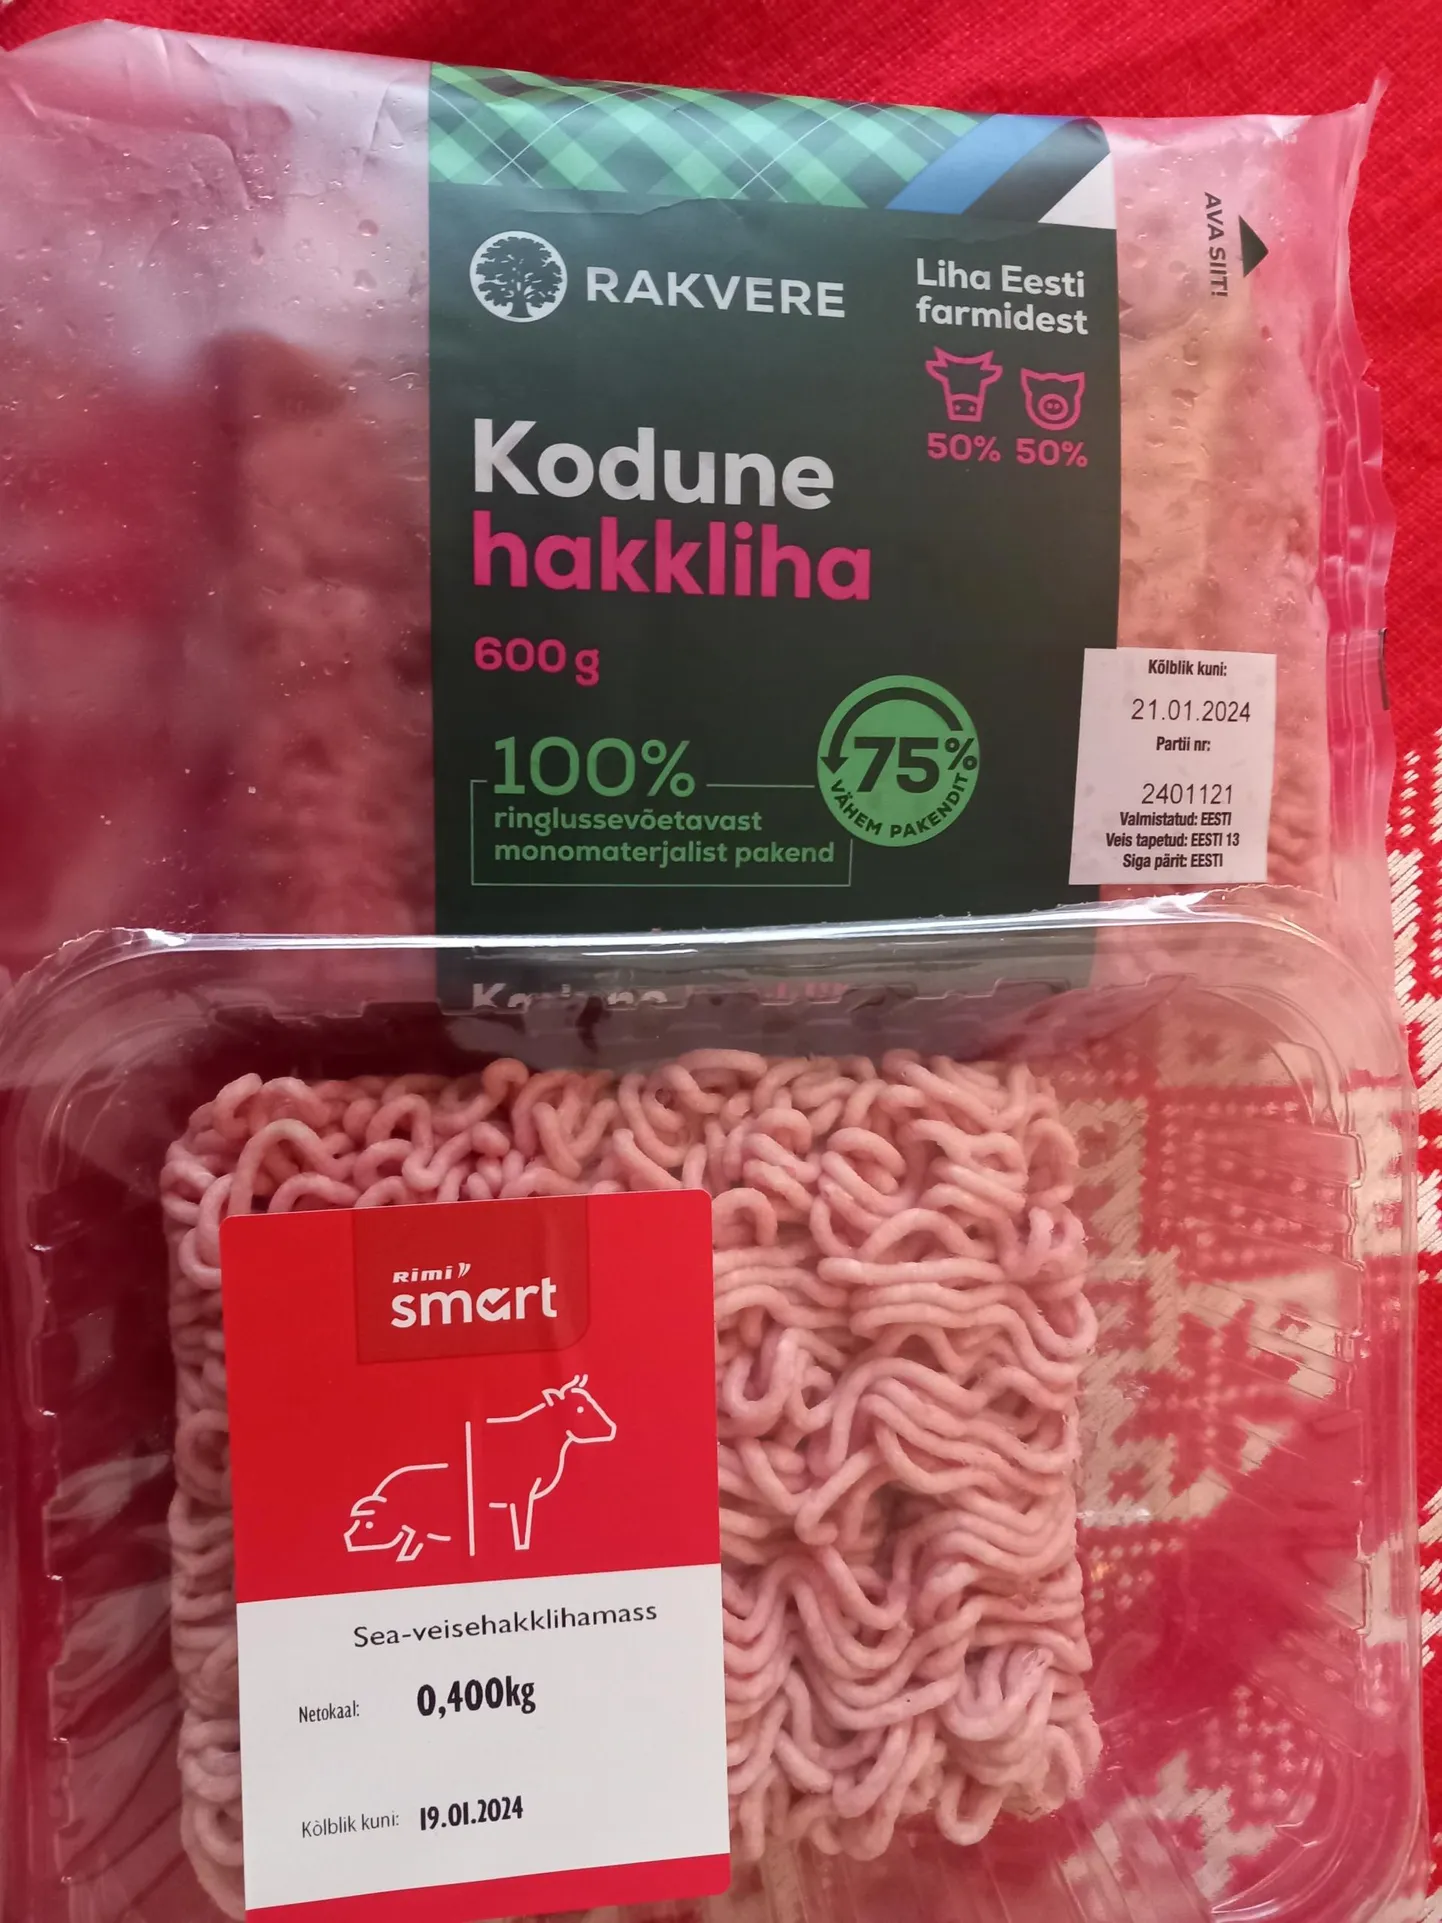 Tõime poest koju eestimaise hakkliha ja poole soodsama, Poolas toodetu, mis sisaldab liha tegelikult vaevu üle poole massist.